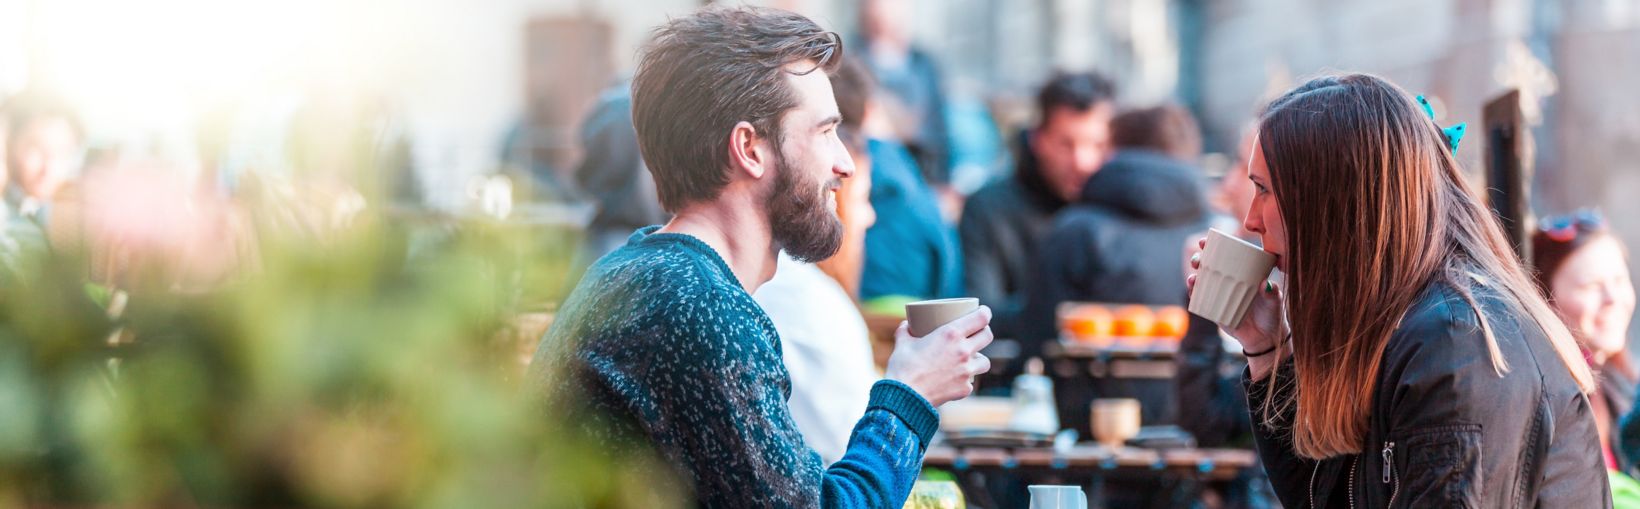 Jauna moteris ilgais rudais plaukais šviesią, tačiau vėsią dieną, su draugu kavinėje prie staliuko geria kavą